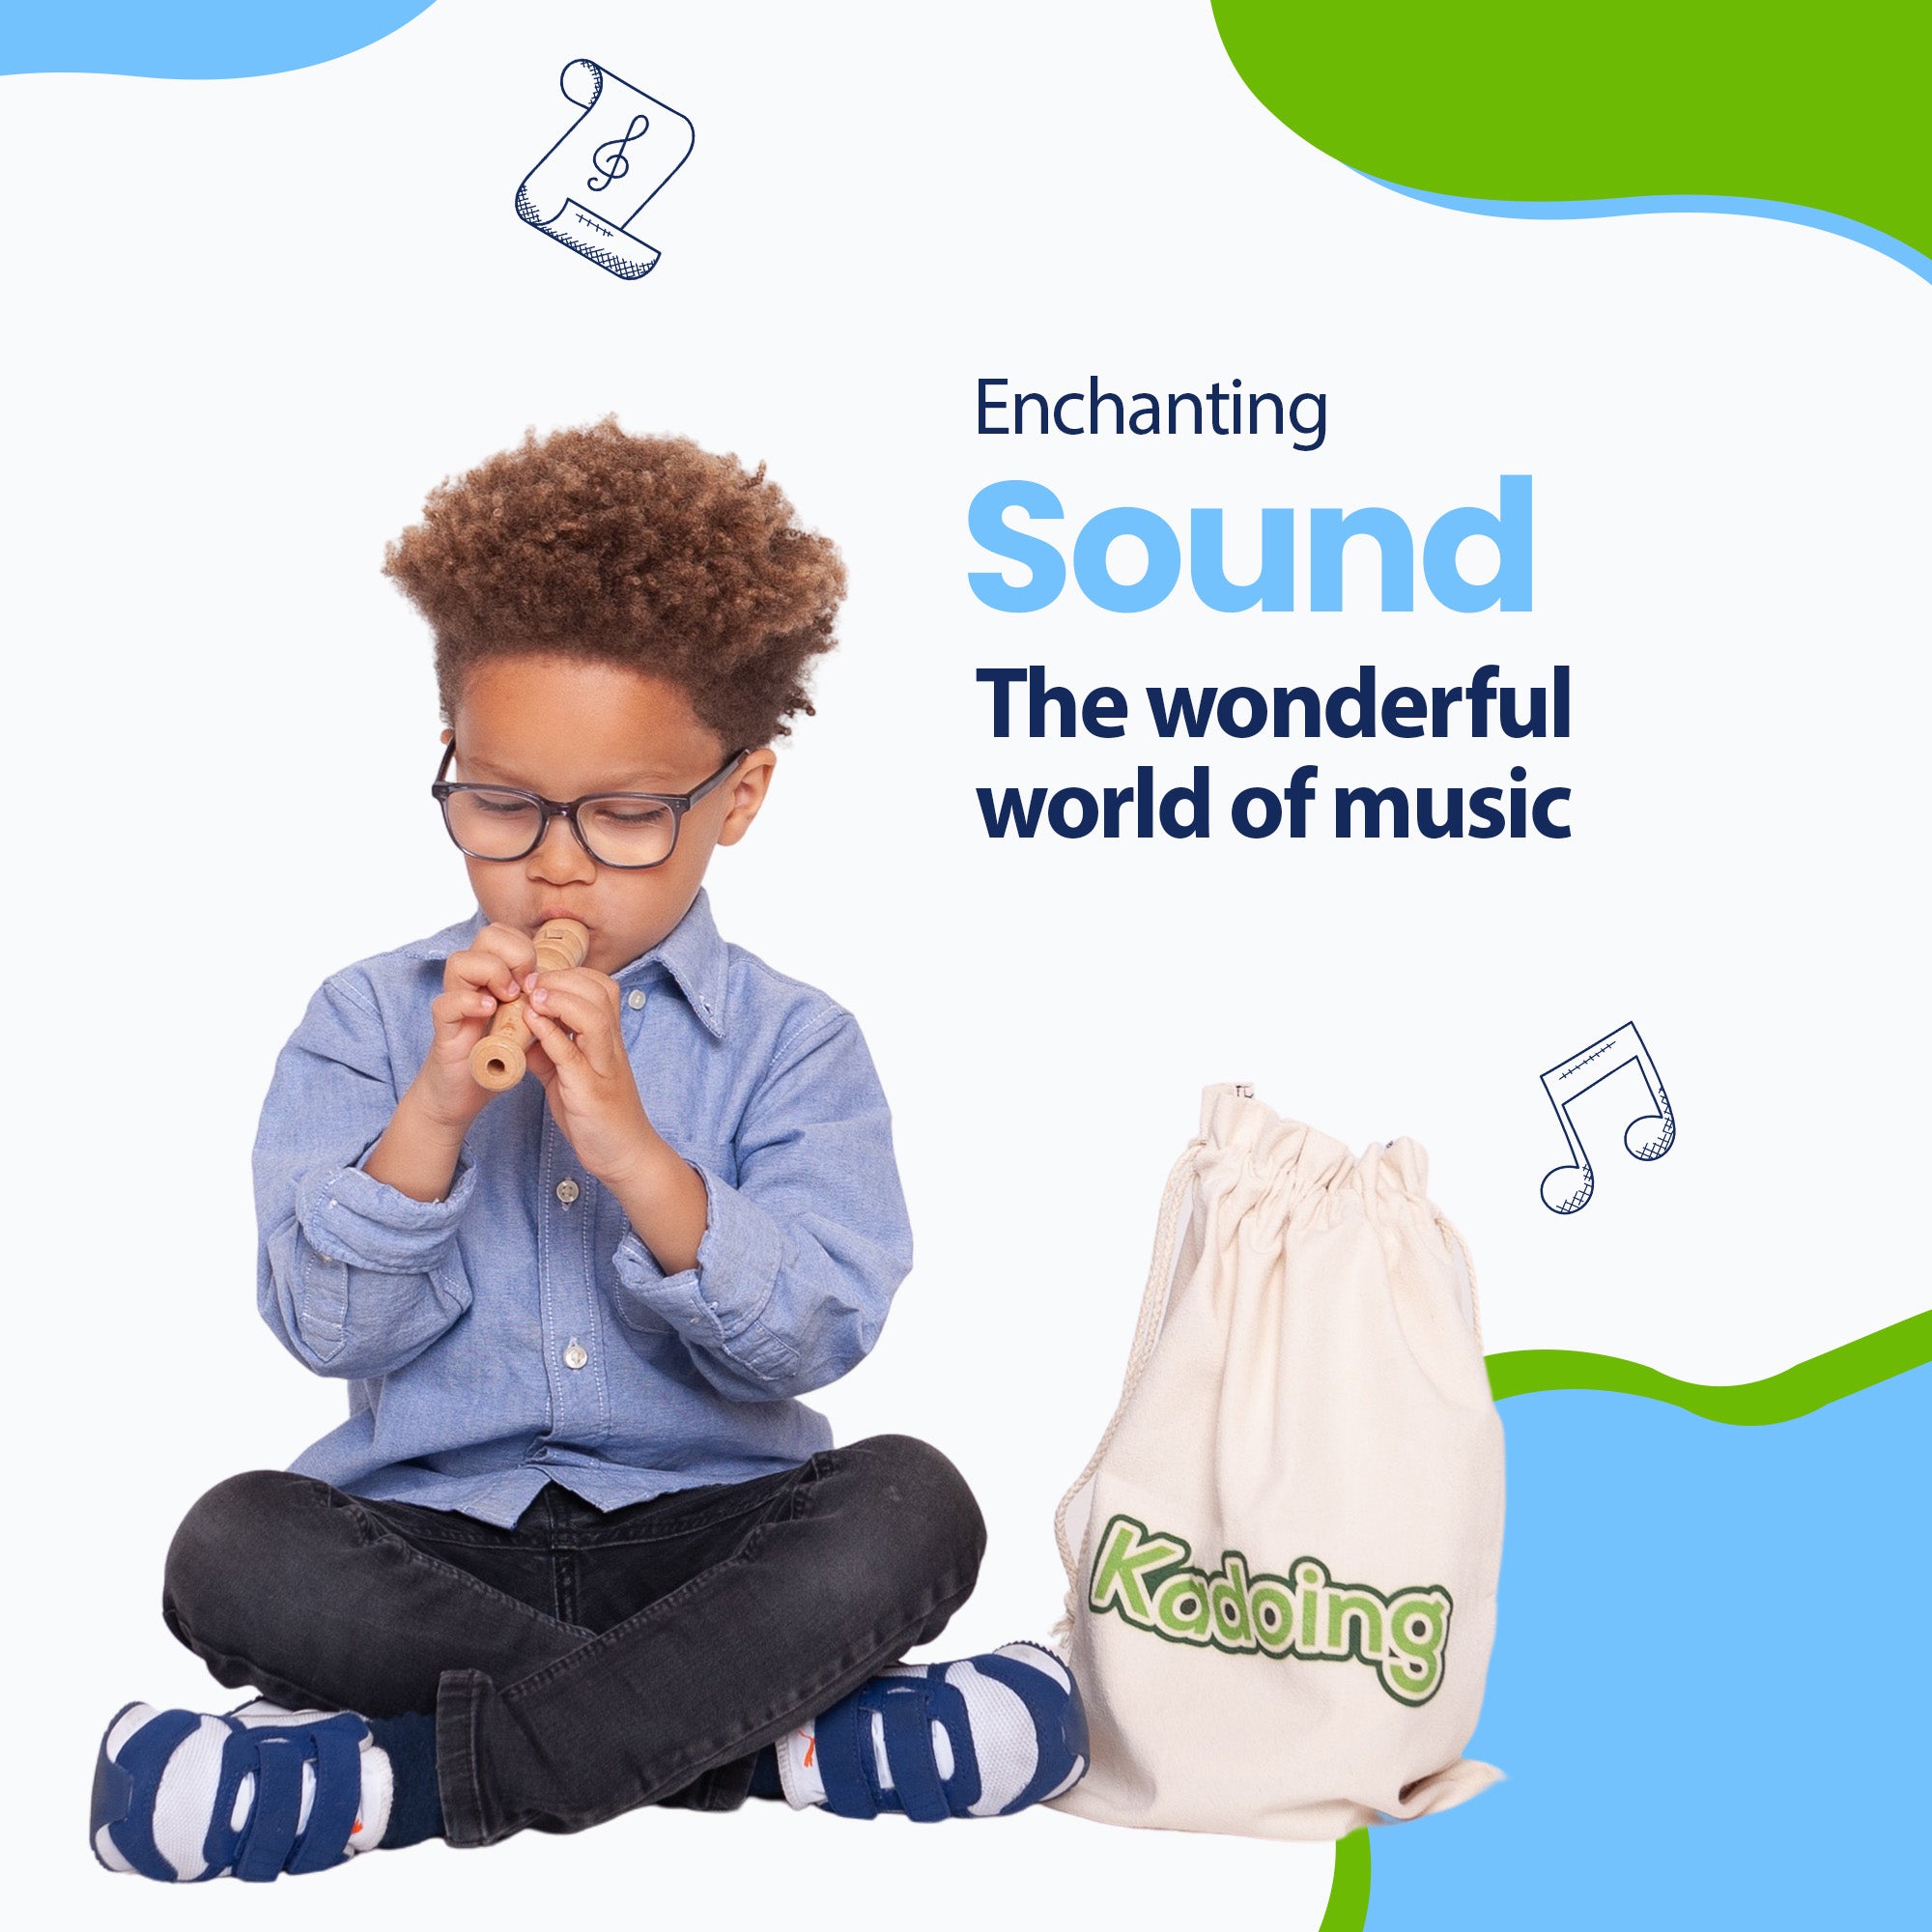 Os sons da música realmente impressionam as crianças. Seu filho agora pode surpreender você com suas habilidades musicais. Simplesmente encantador!